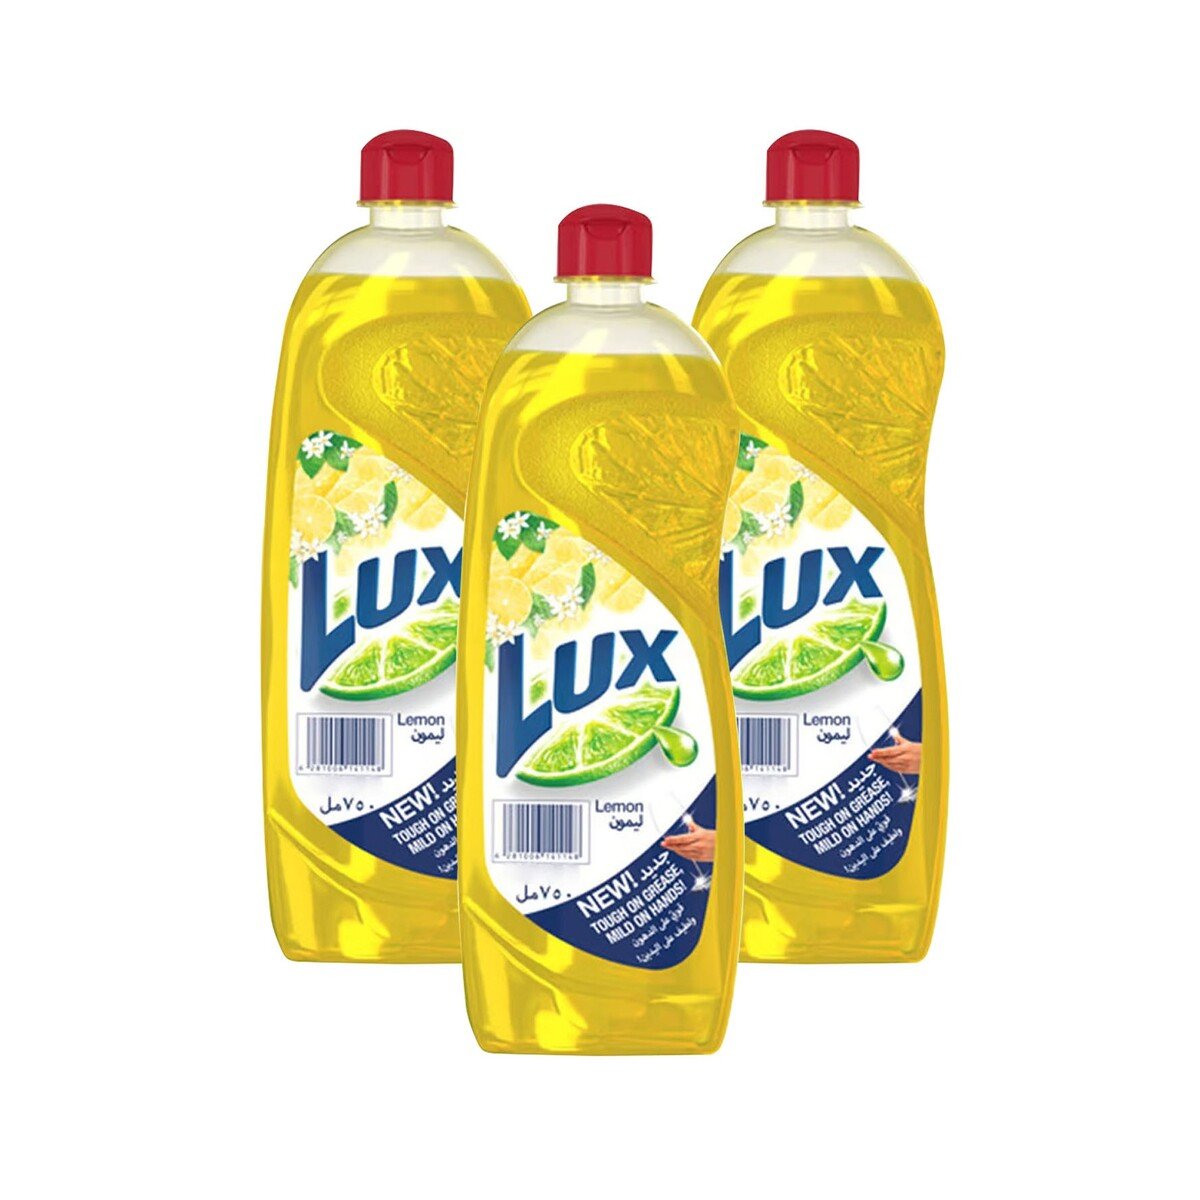 Buy Lux Lemon Dishwashing Liquid Value Pack 3 x 725 ml Online at Best Price | Washing Up | Lulu UAE in UAE